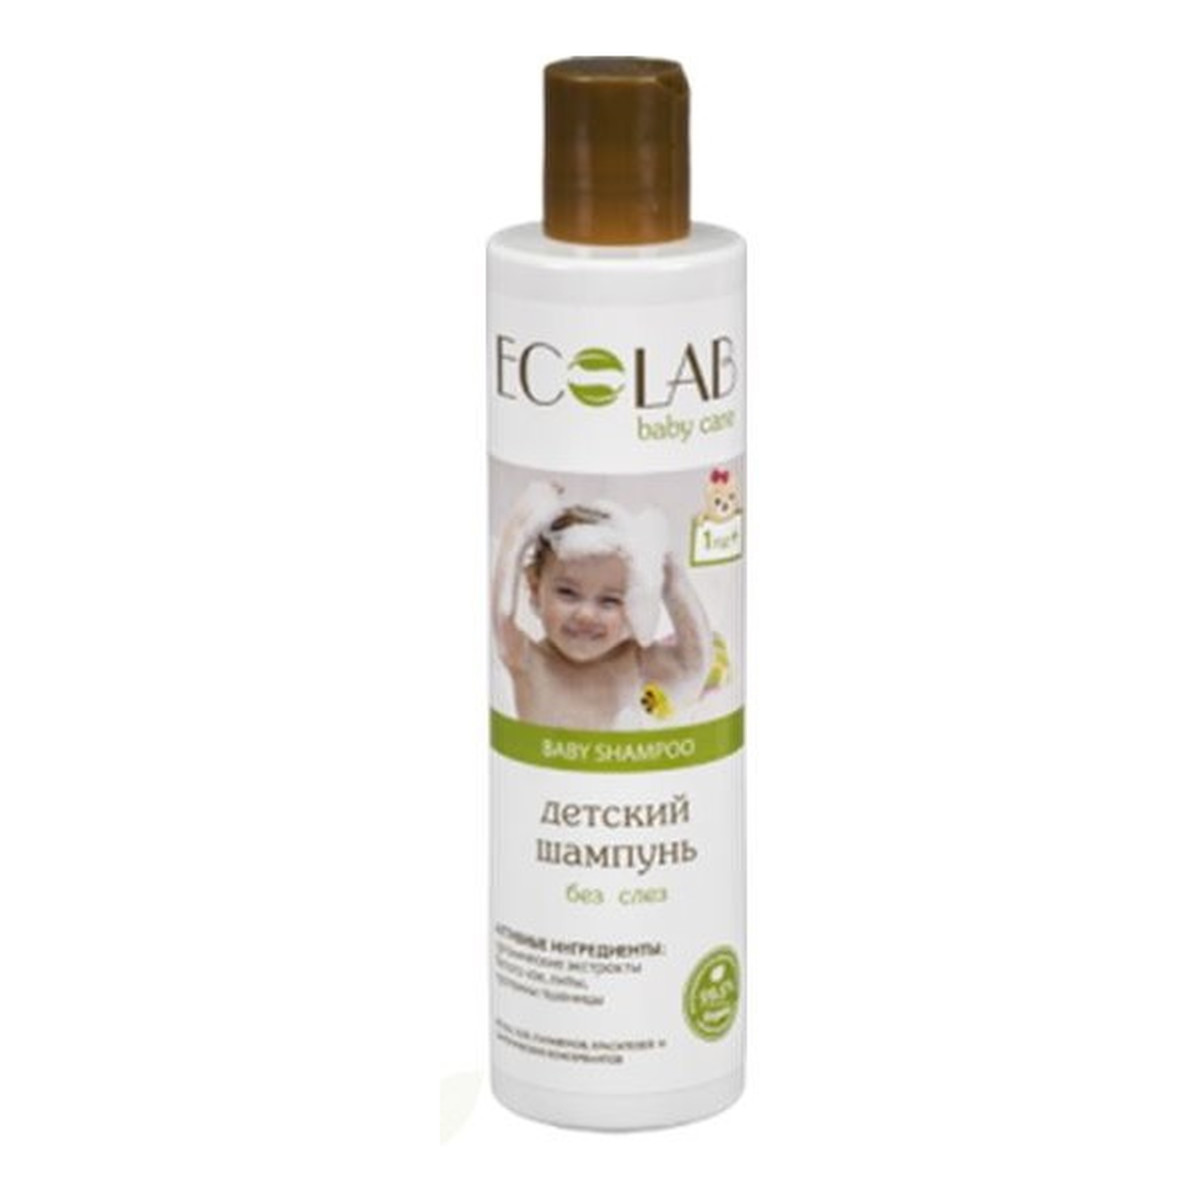 ecolab baby care szampon do włosów dla dzieci